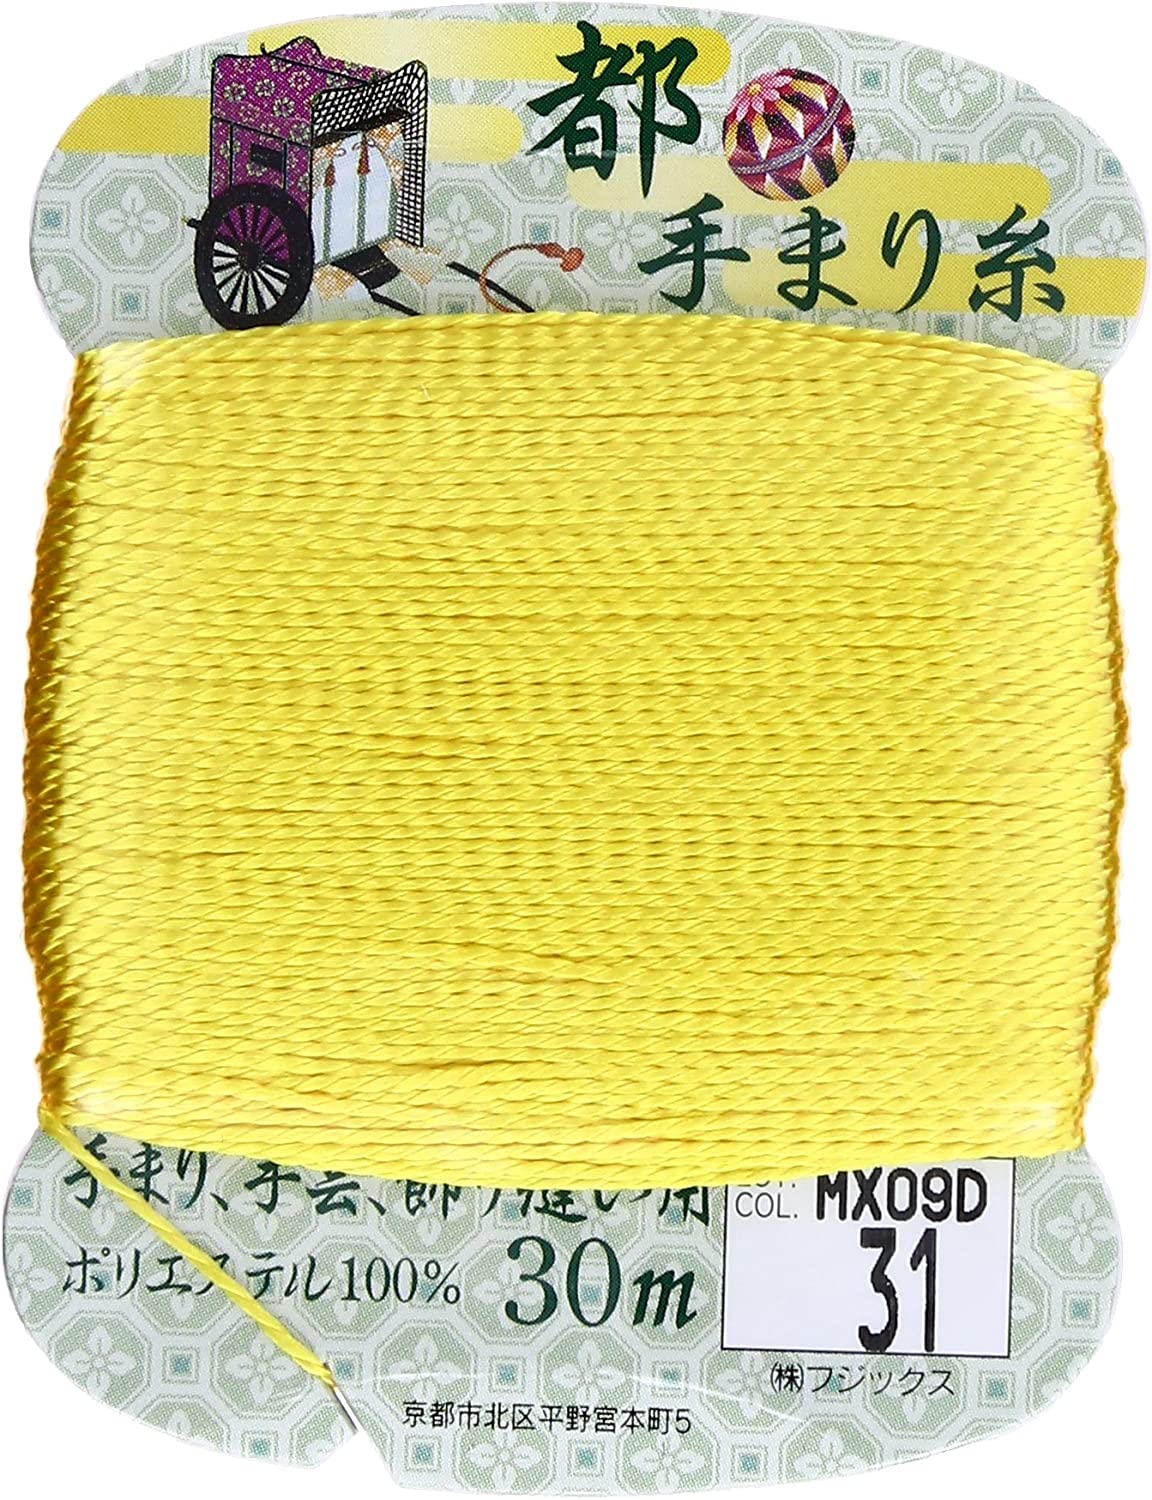 手まり糸「手芸材料の卸売りサイトChuko Online」